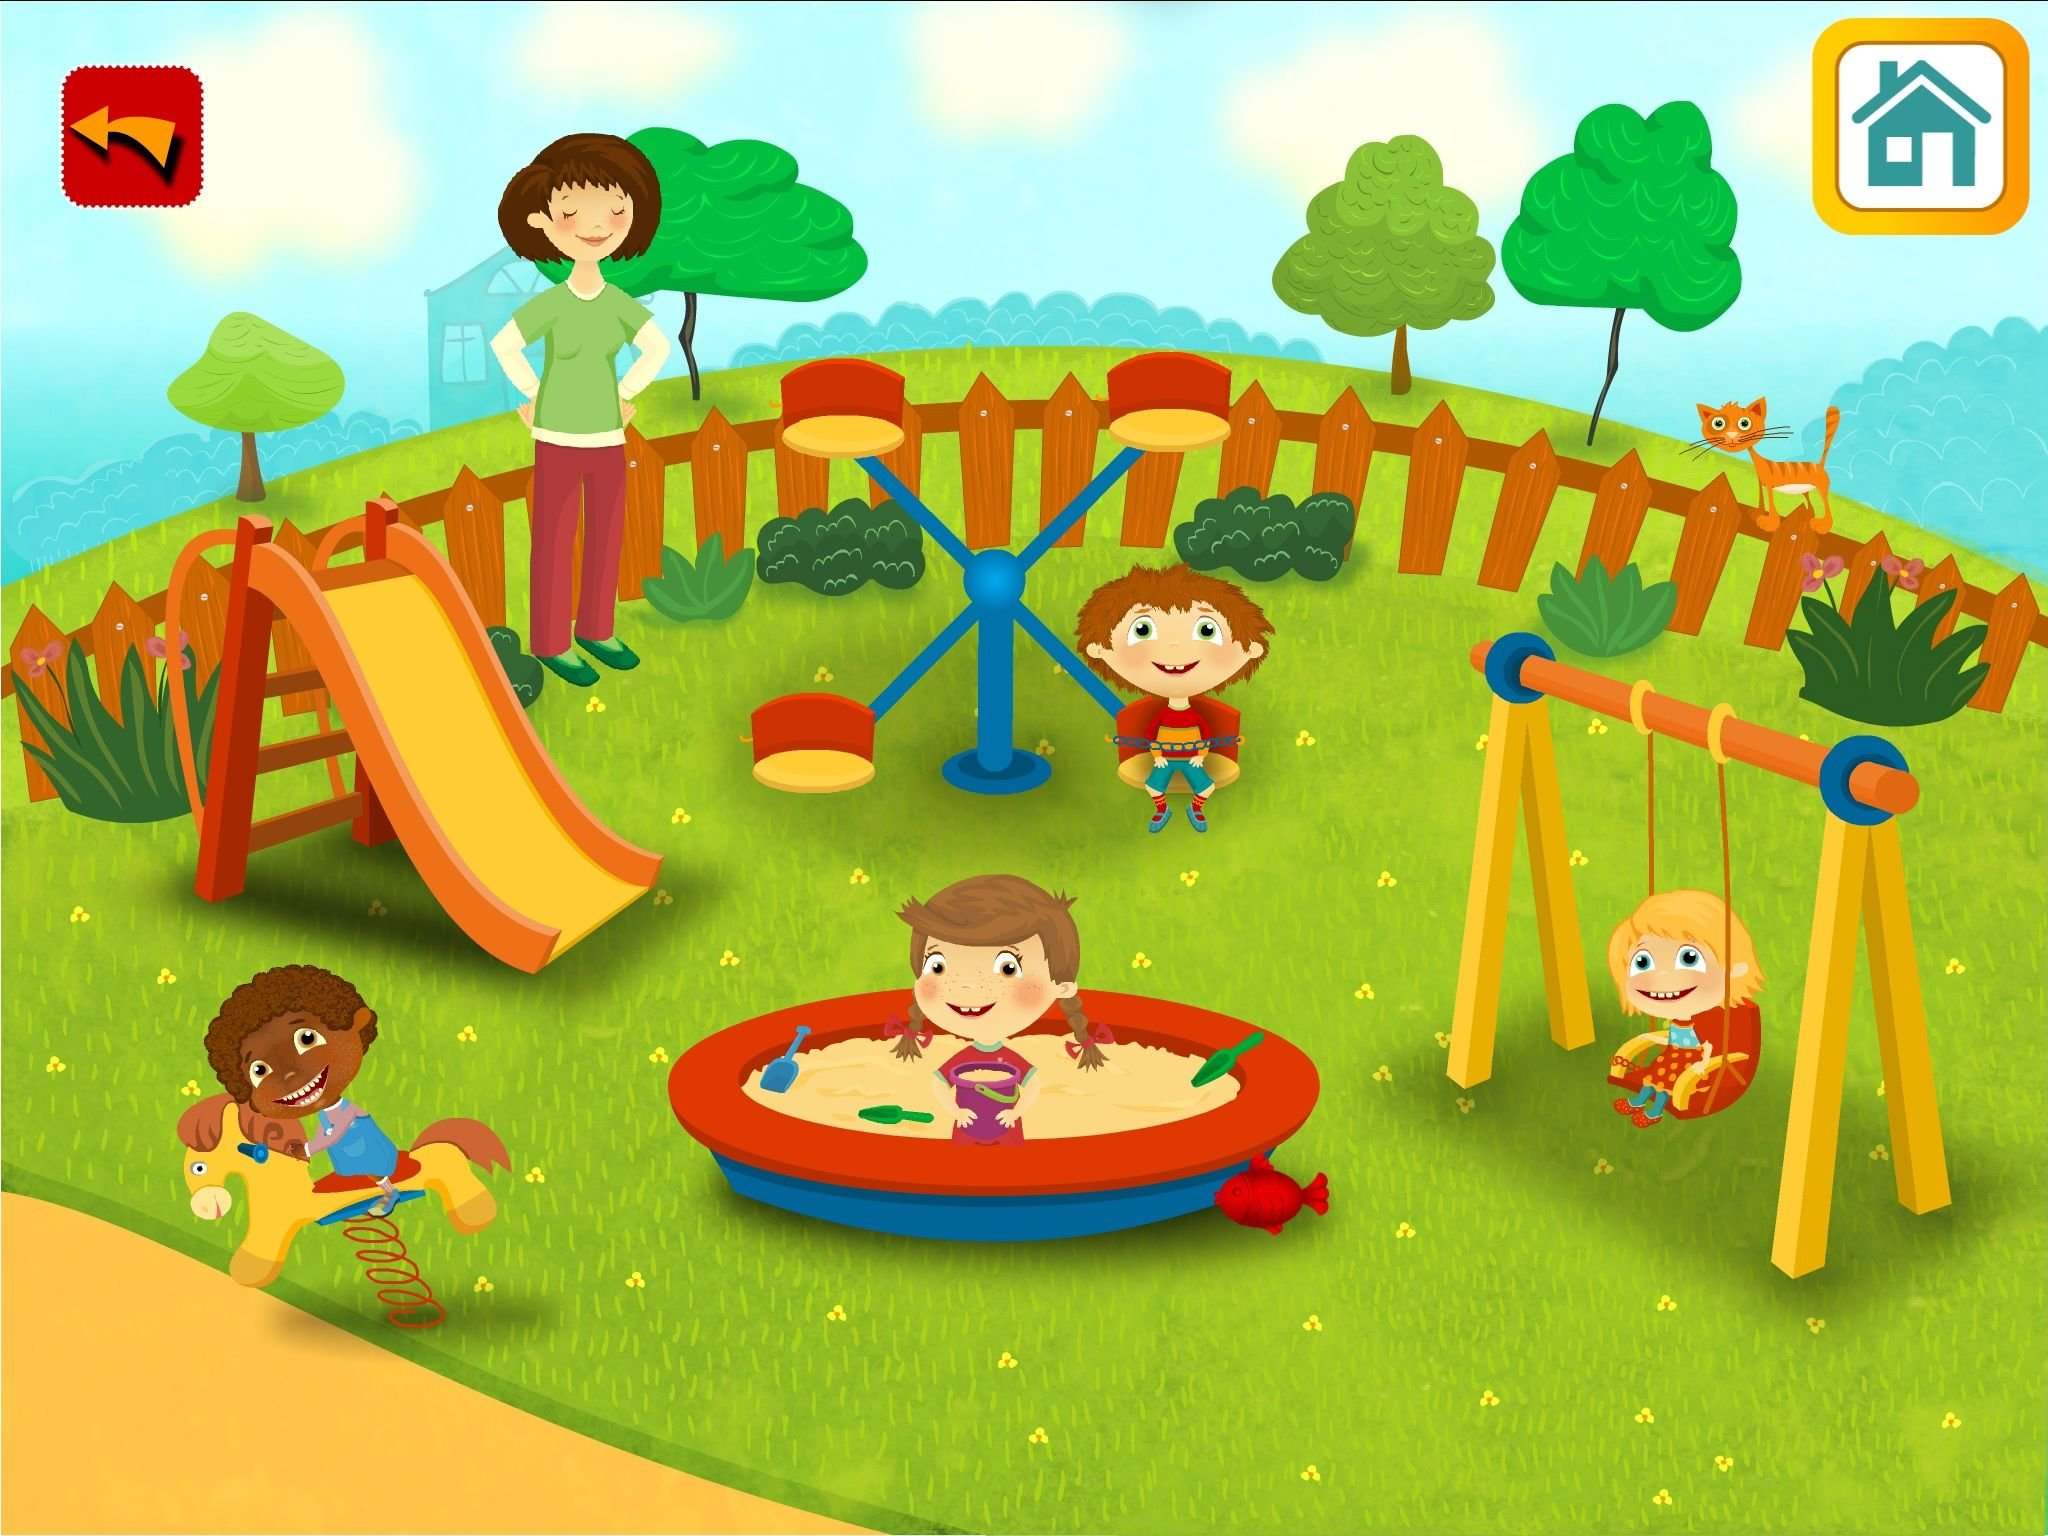 Playground gameplay. Детская игровая площадка. Детская площадка для малышей. Игровая площадка в детском саду. Иллюстрация детской площадки.